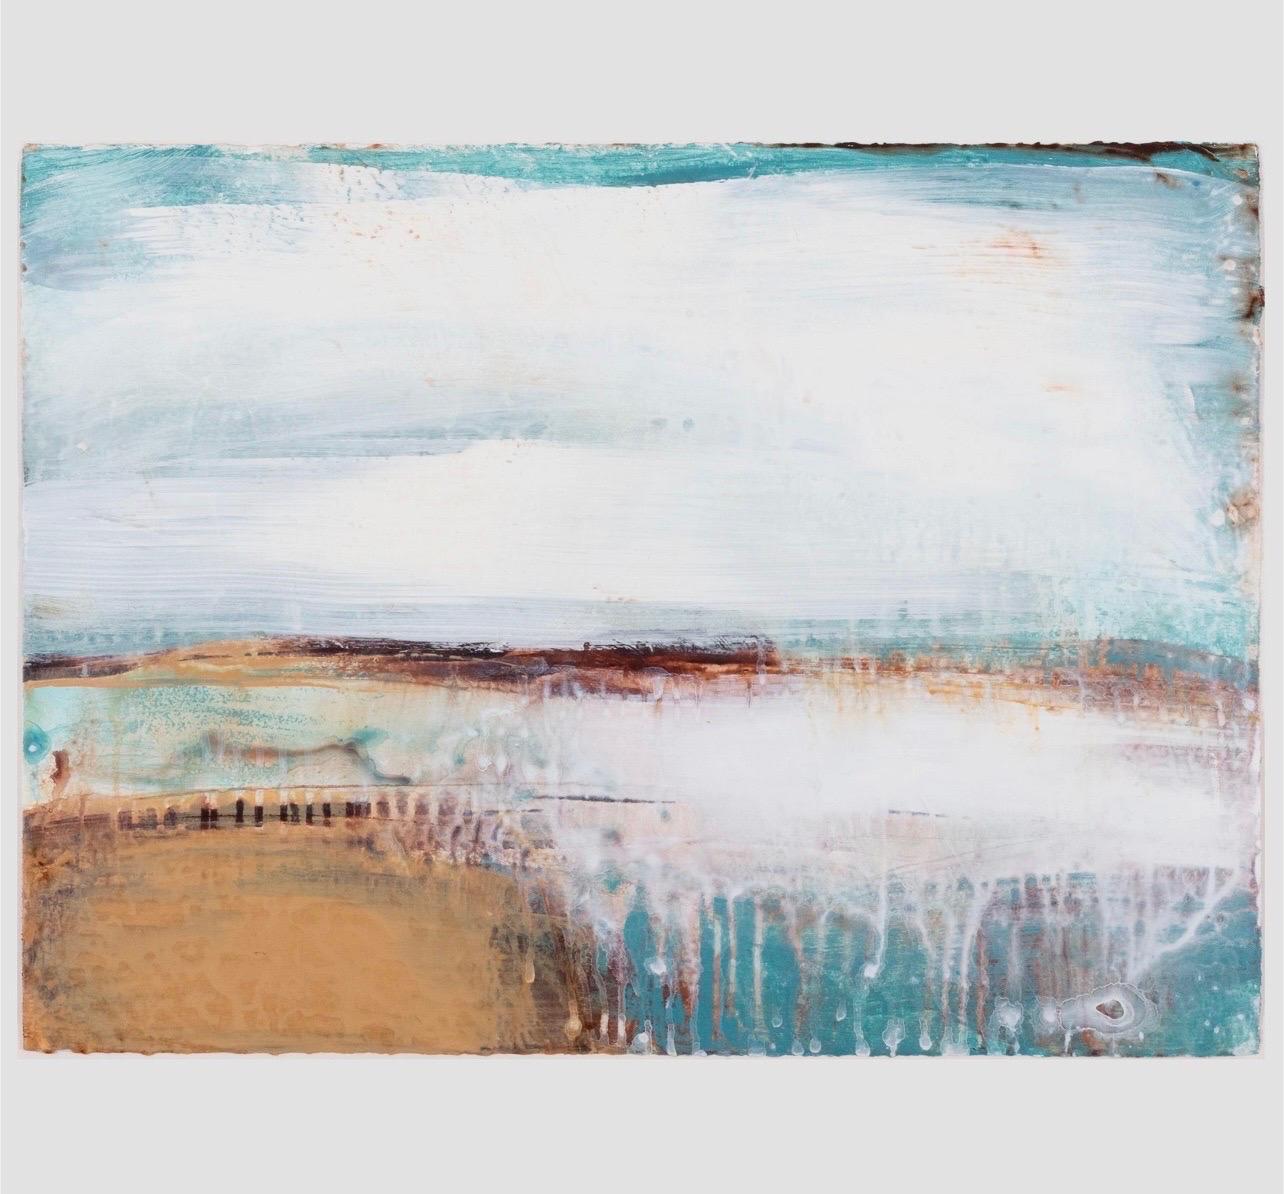 Abstrakt-expressionistische Tugenden, Landschaft, venezianisches Gipsgemälde, Schal Dulaney (Abstrakter Expressionismus), Painting, von Shawn Dulaney